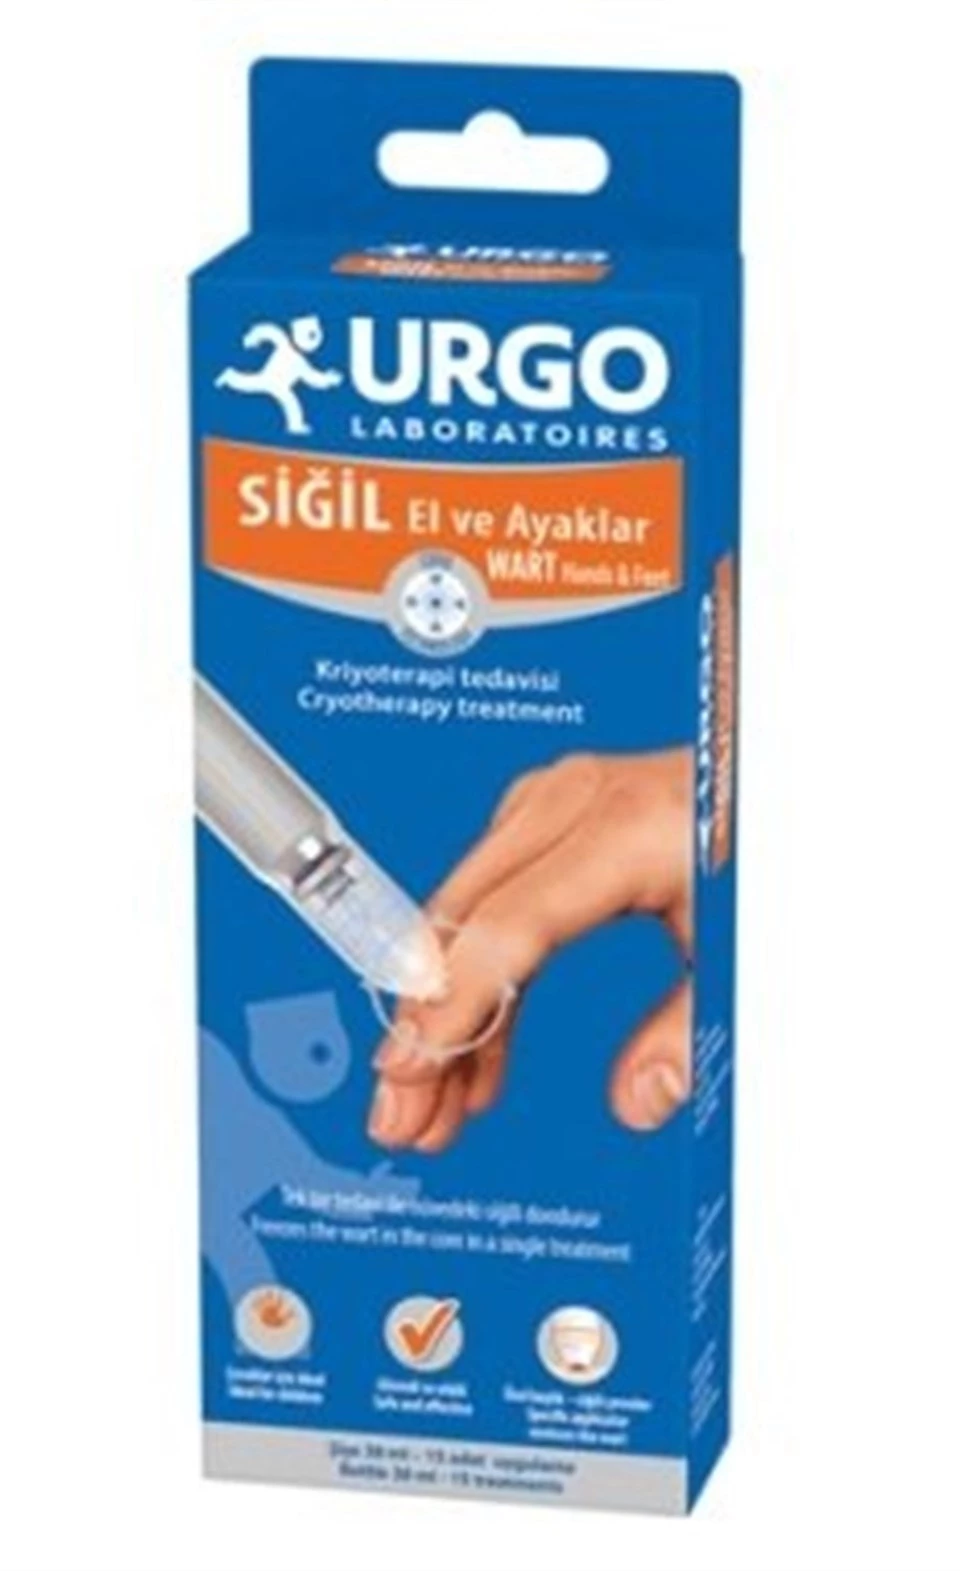 URGO Siğil Kriyoterapi Sıvı Pansuman 38 ml